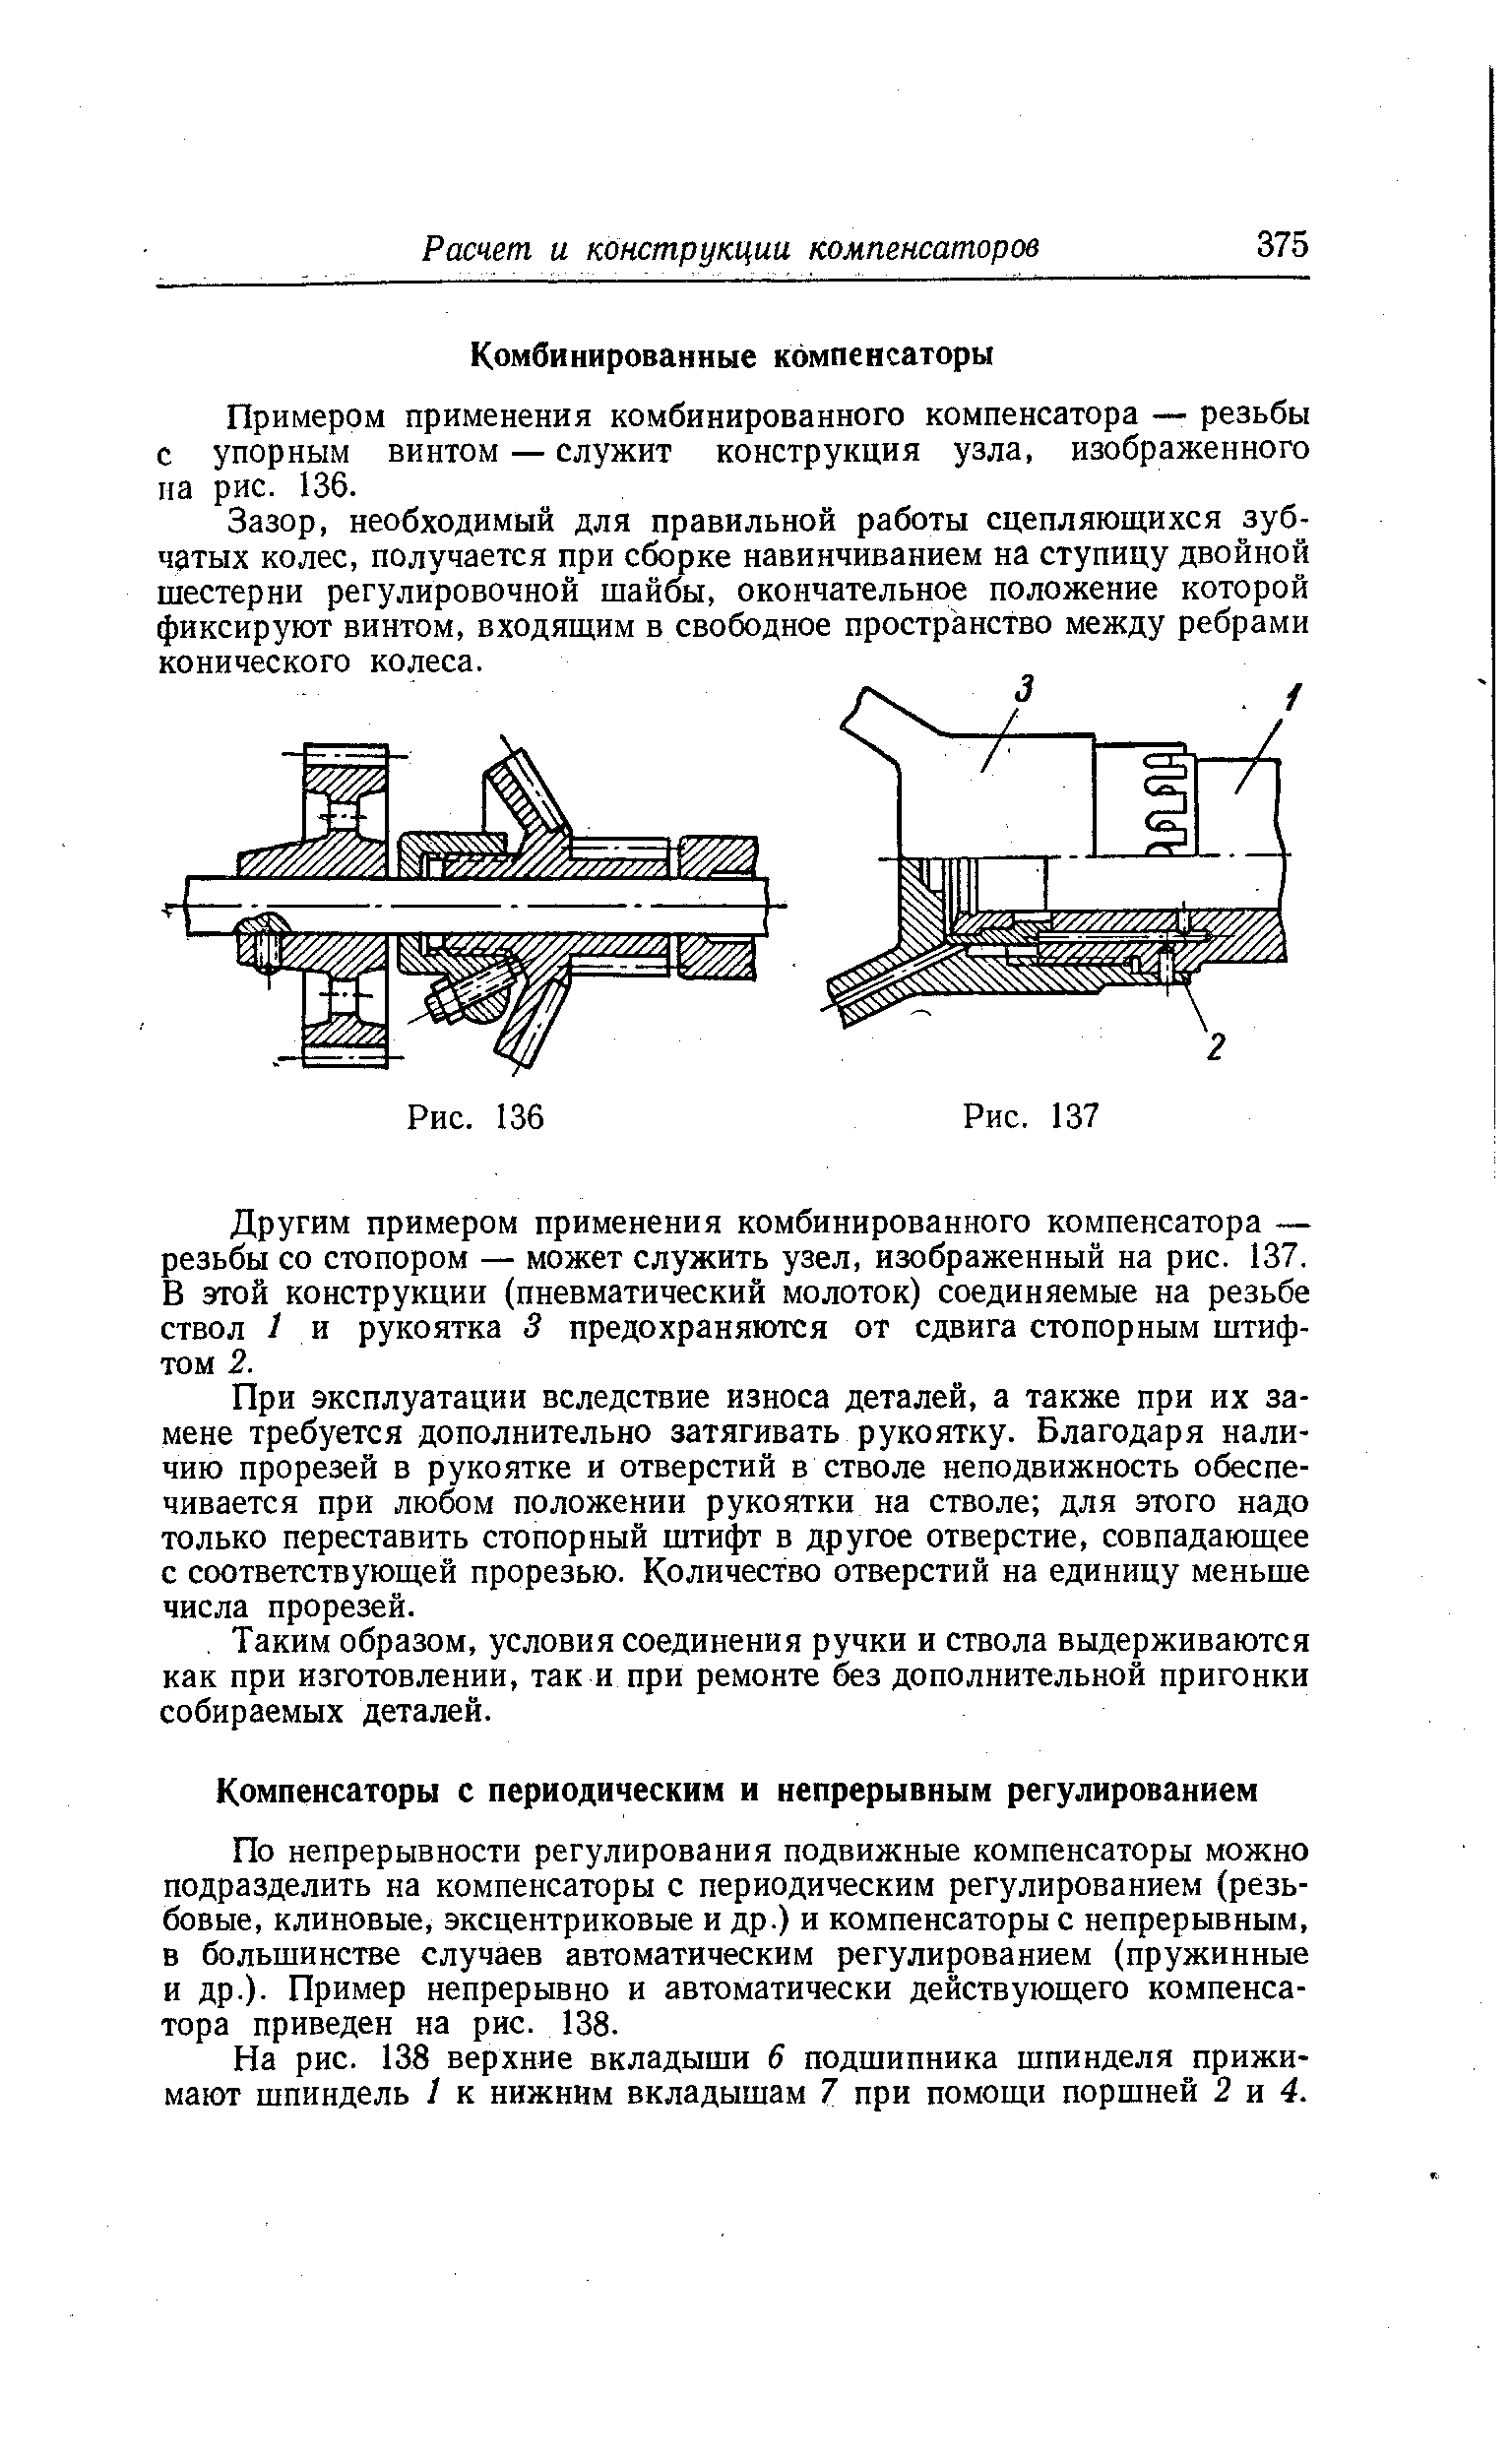 Примером применения комбинированного компенсатора — резьбы с упорным винтом — служит конструкция узла, изображенного па рис. 136.
